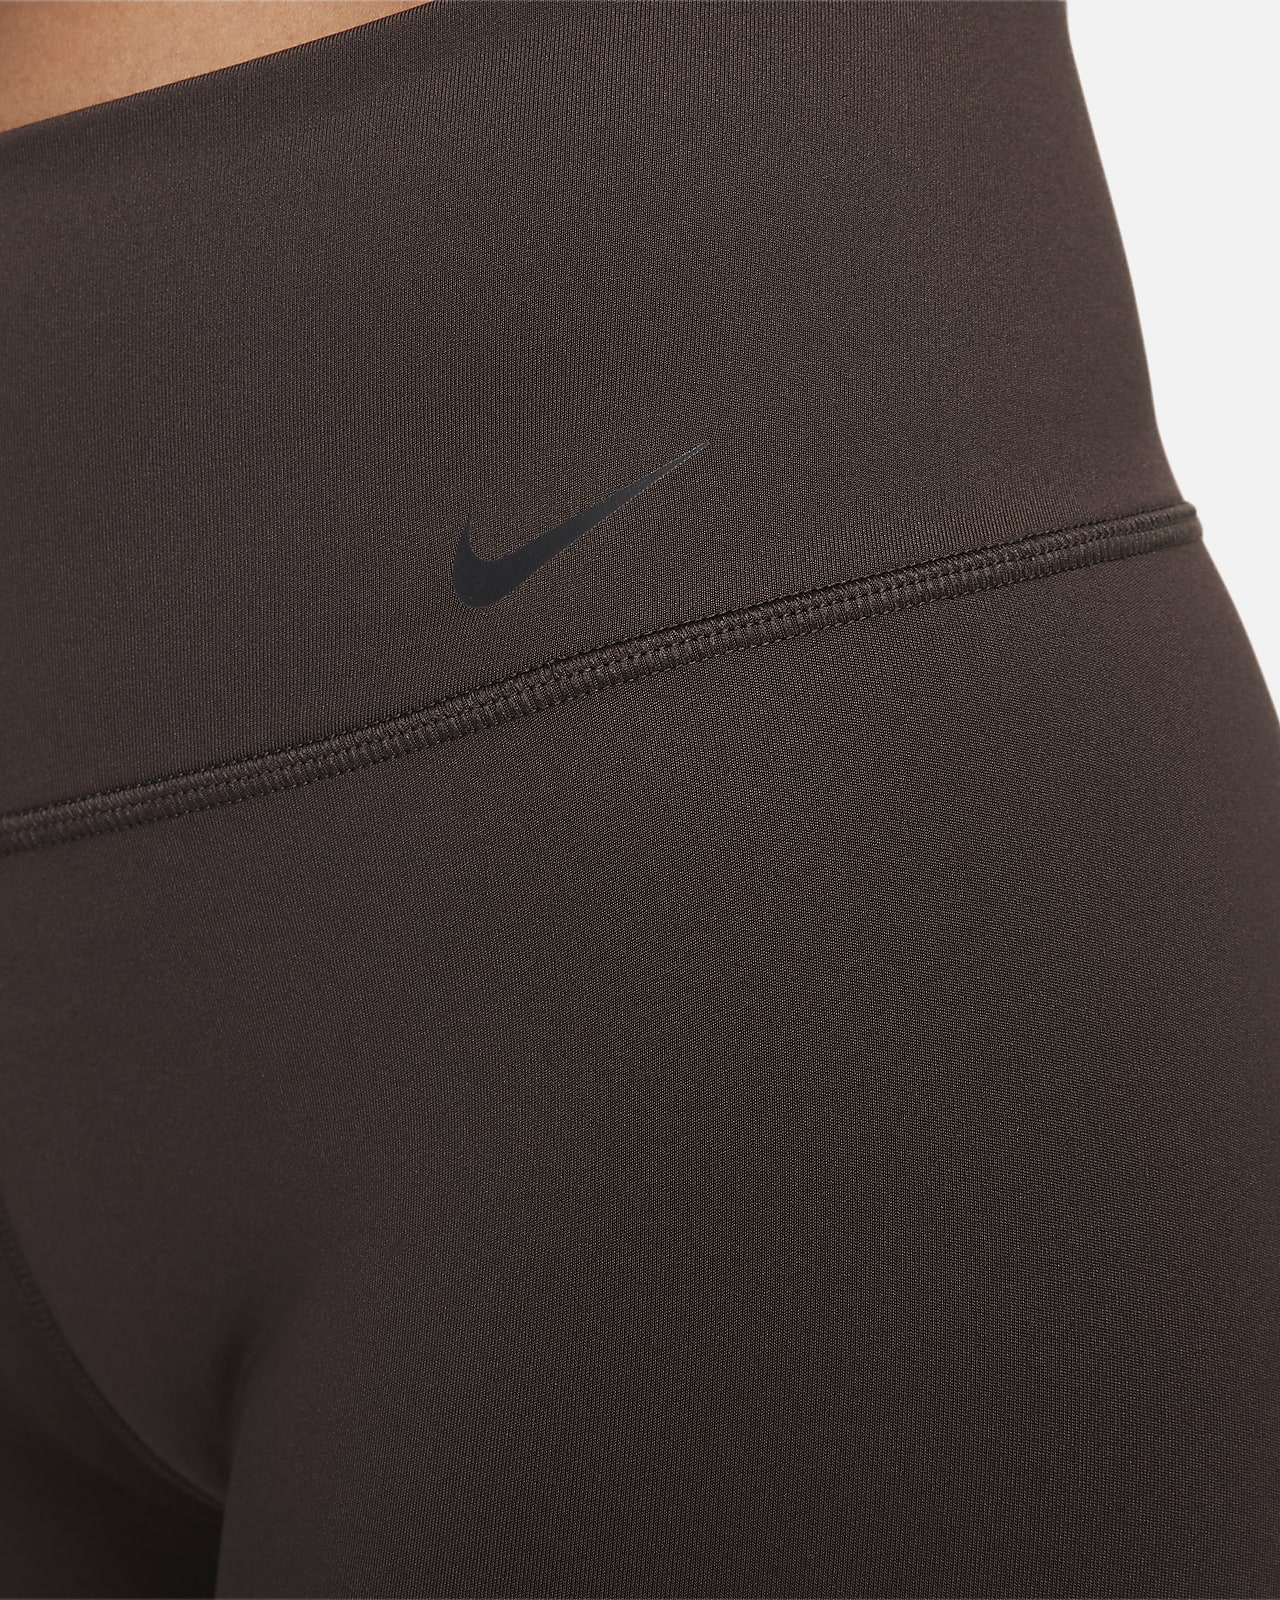 Nike Power Women's Yoga Training Trousers. Nike GB  Nike yoga pants, Nike  pants for women, Pants for women